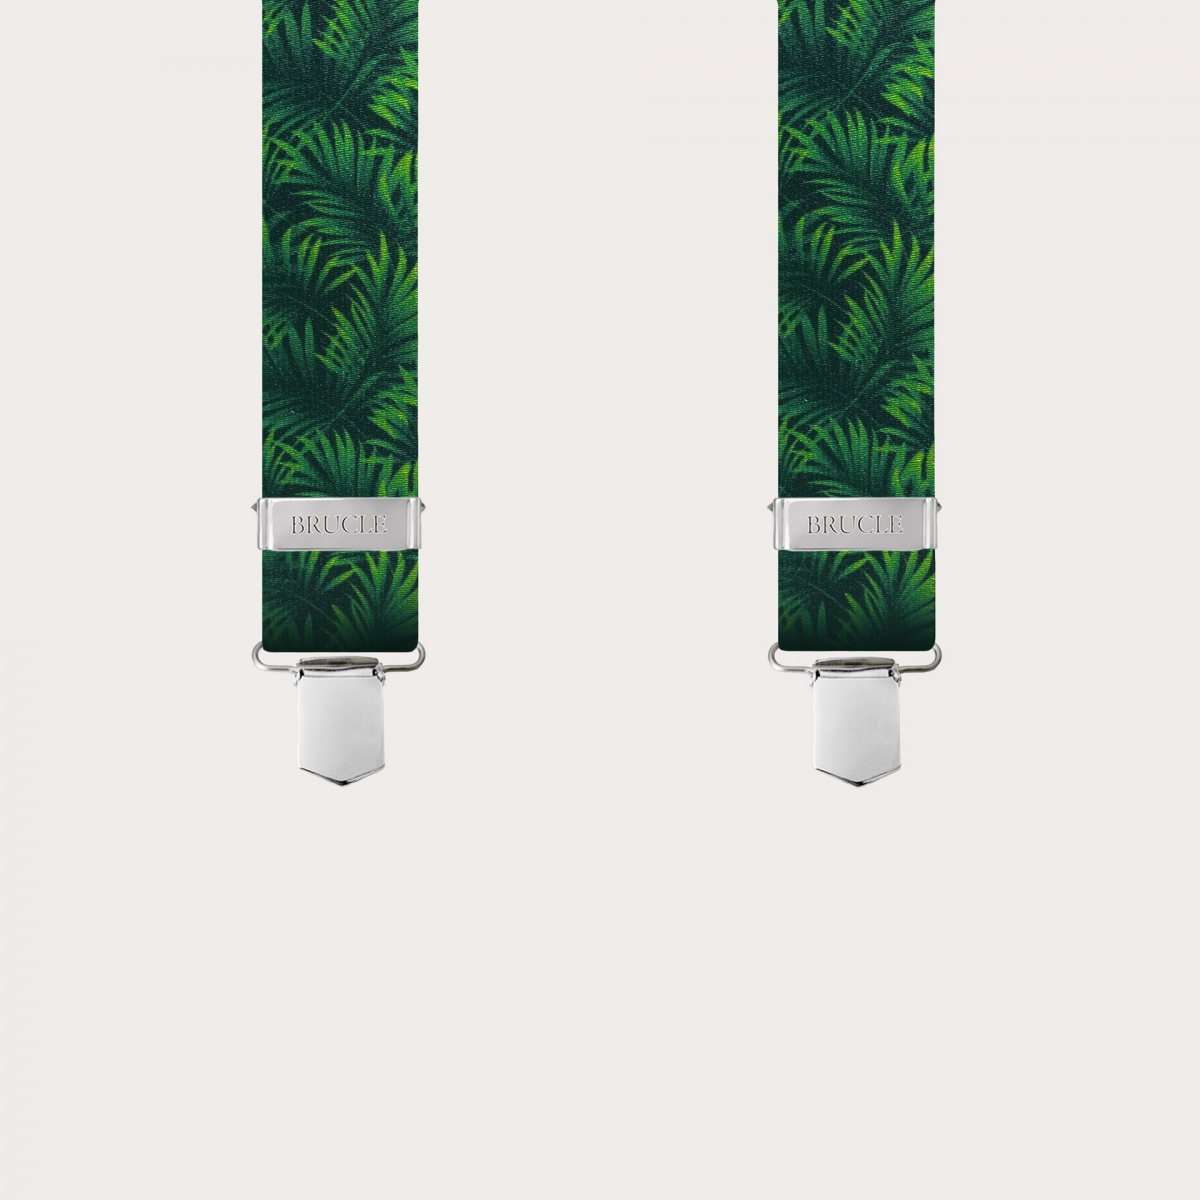 BRUCLE Elastische Hosenträger in Satin-Optik, grün mit Palmblättern